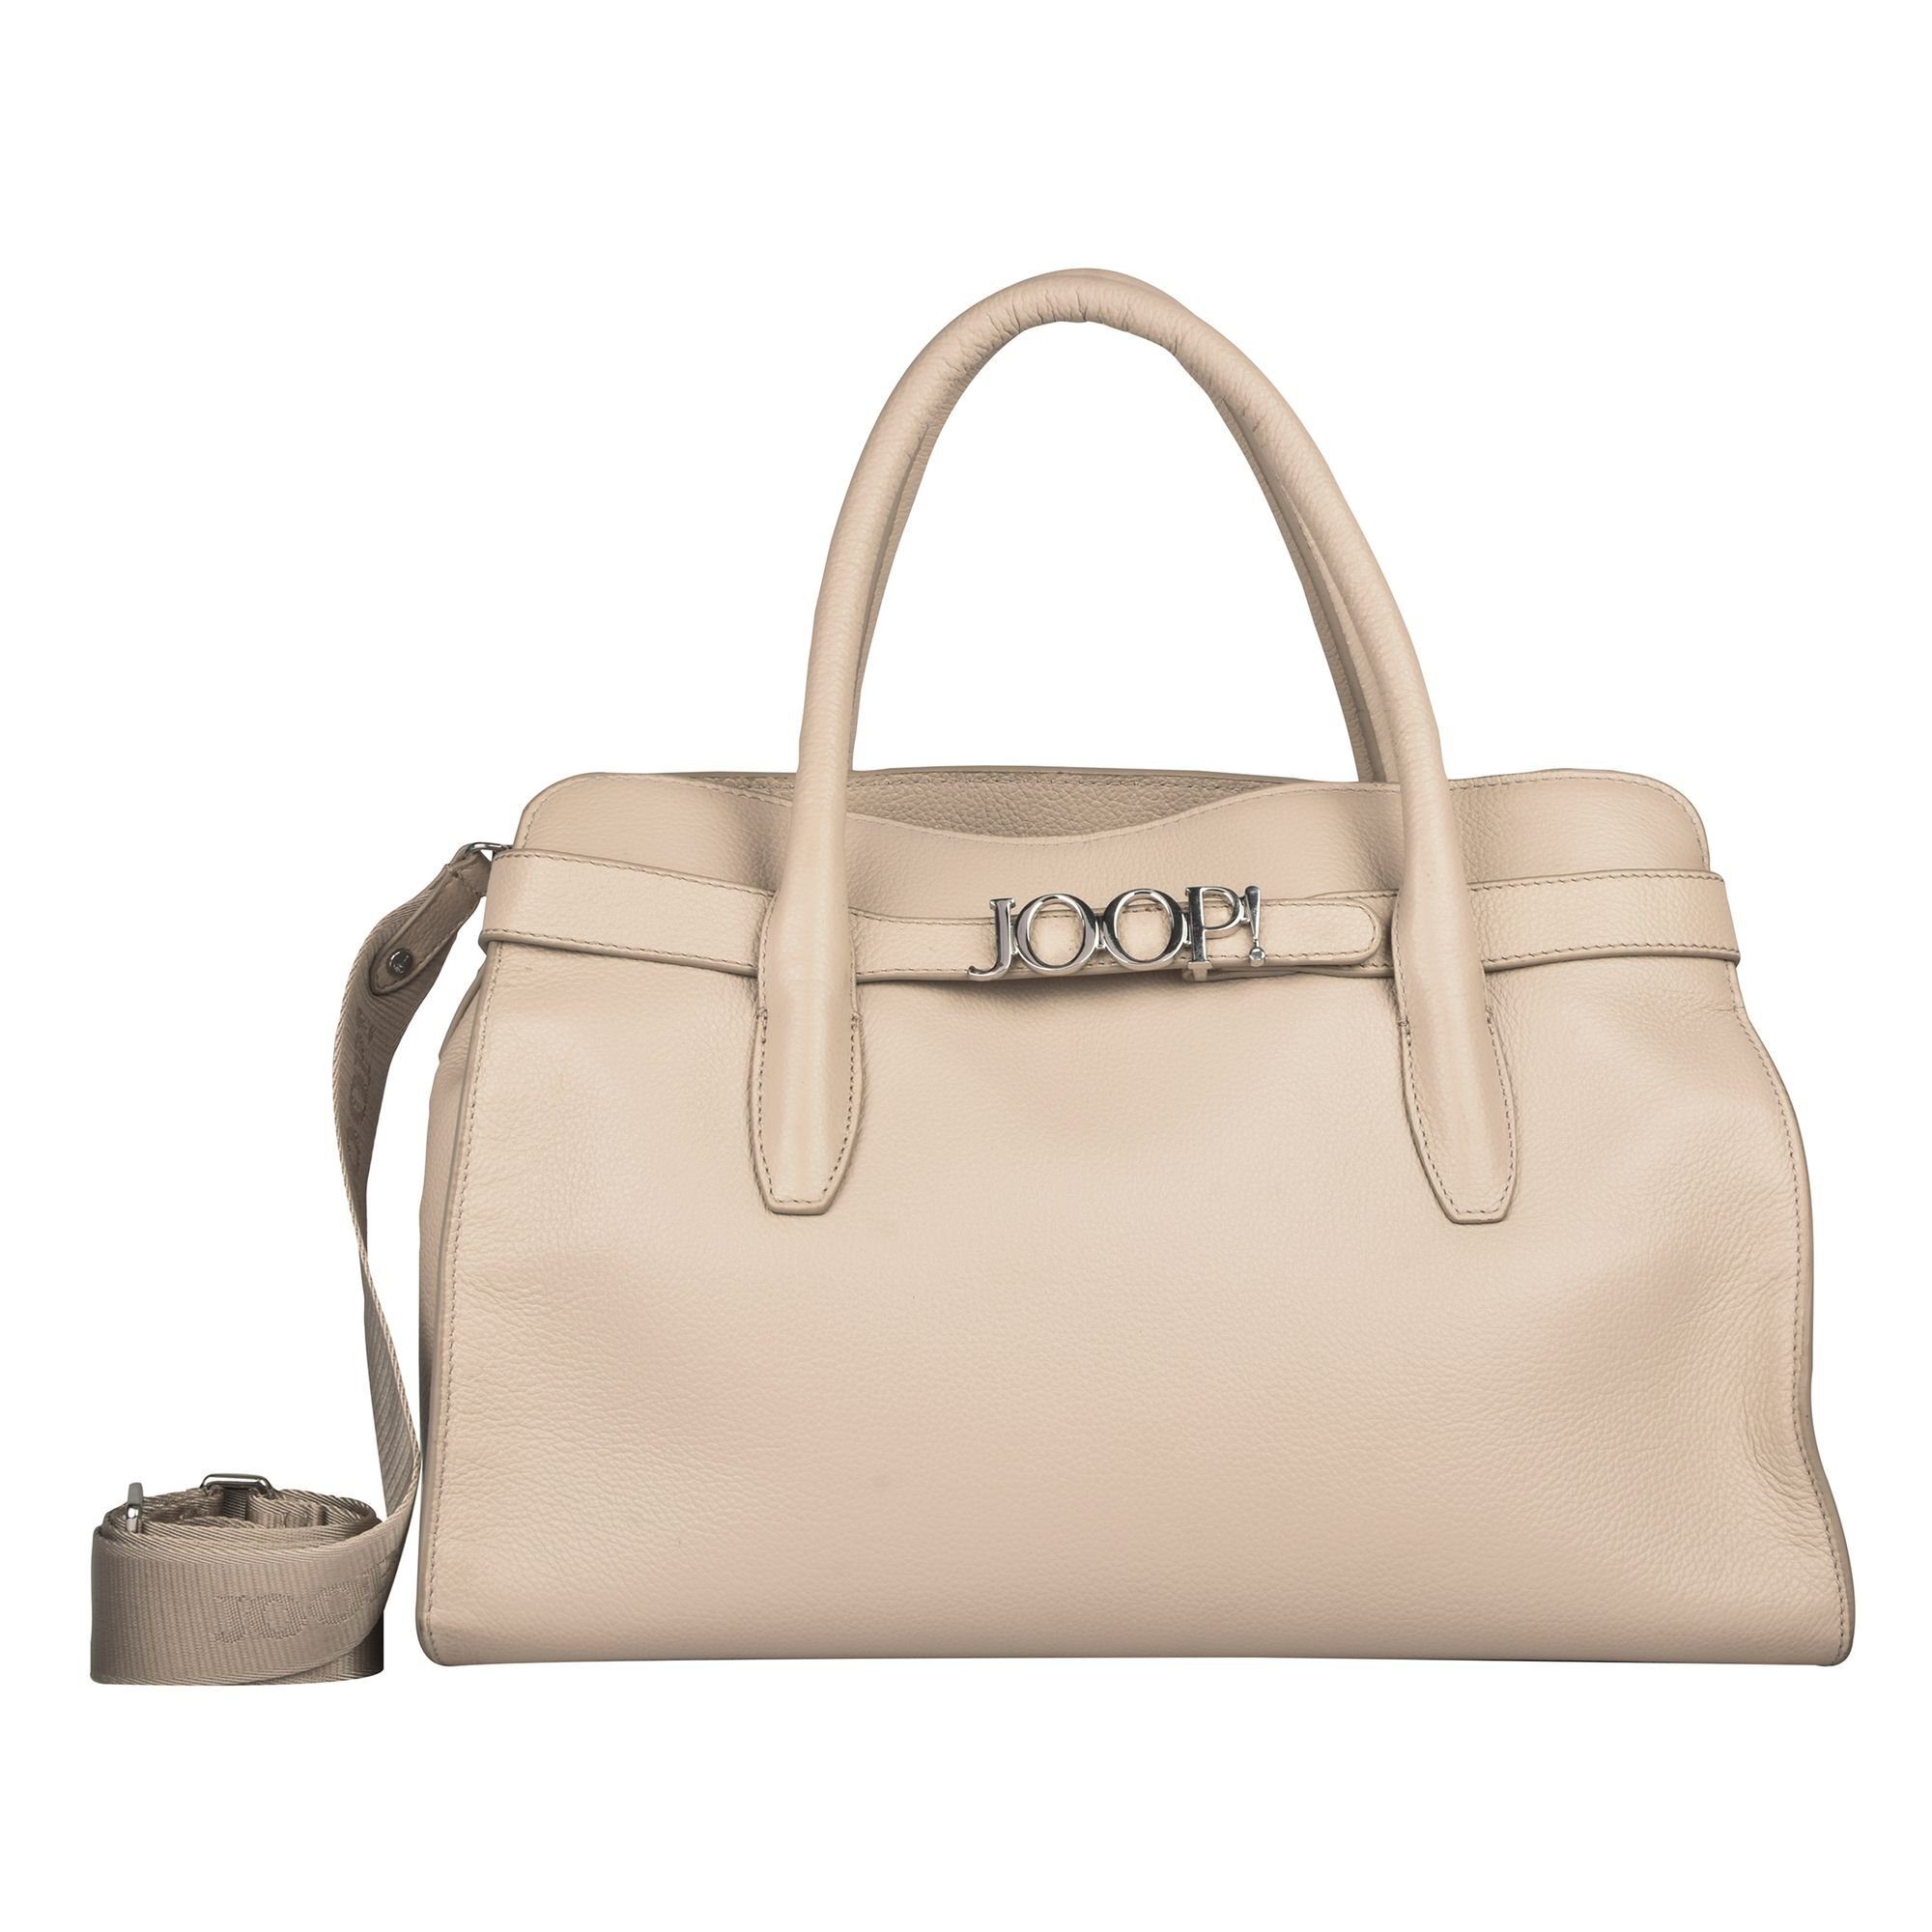 Fashionette Damen Accessoires Taschen Handtaschen für Damen Satchel Bag Vivace Giulia Mho 